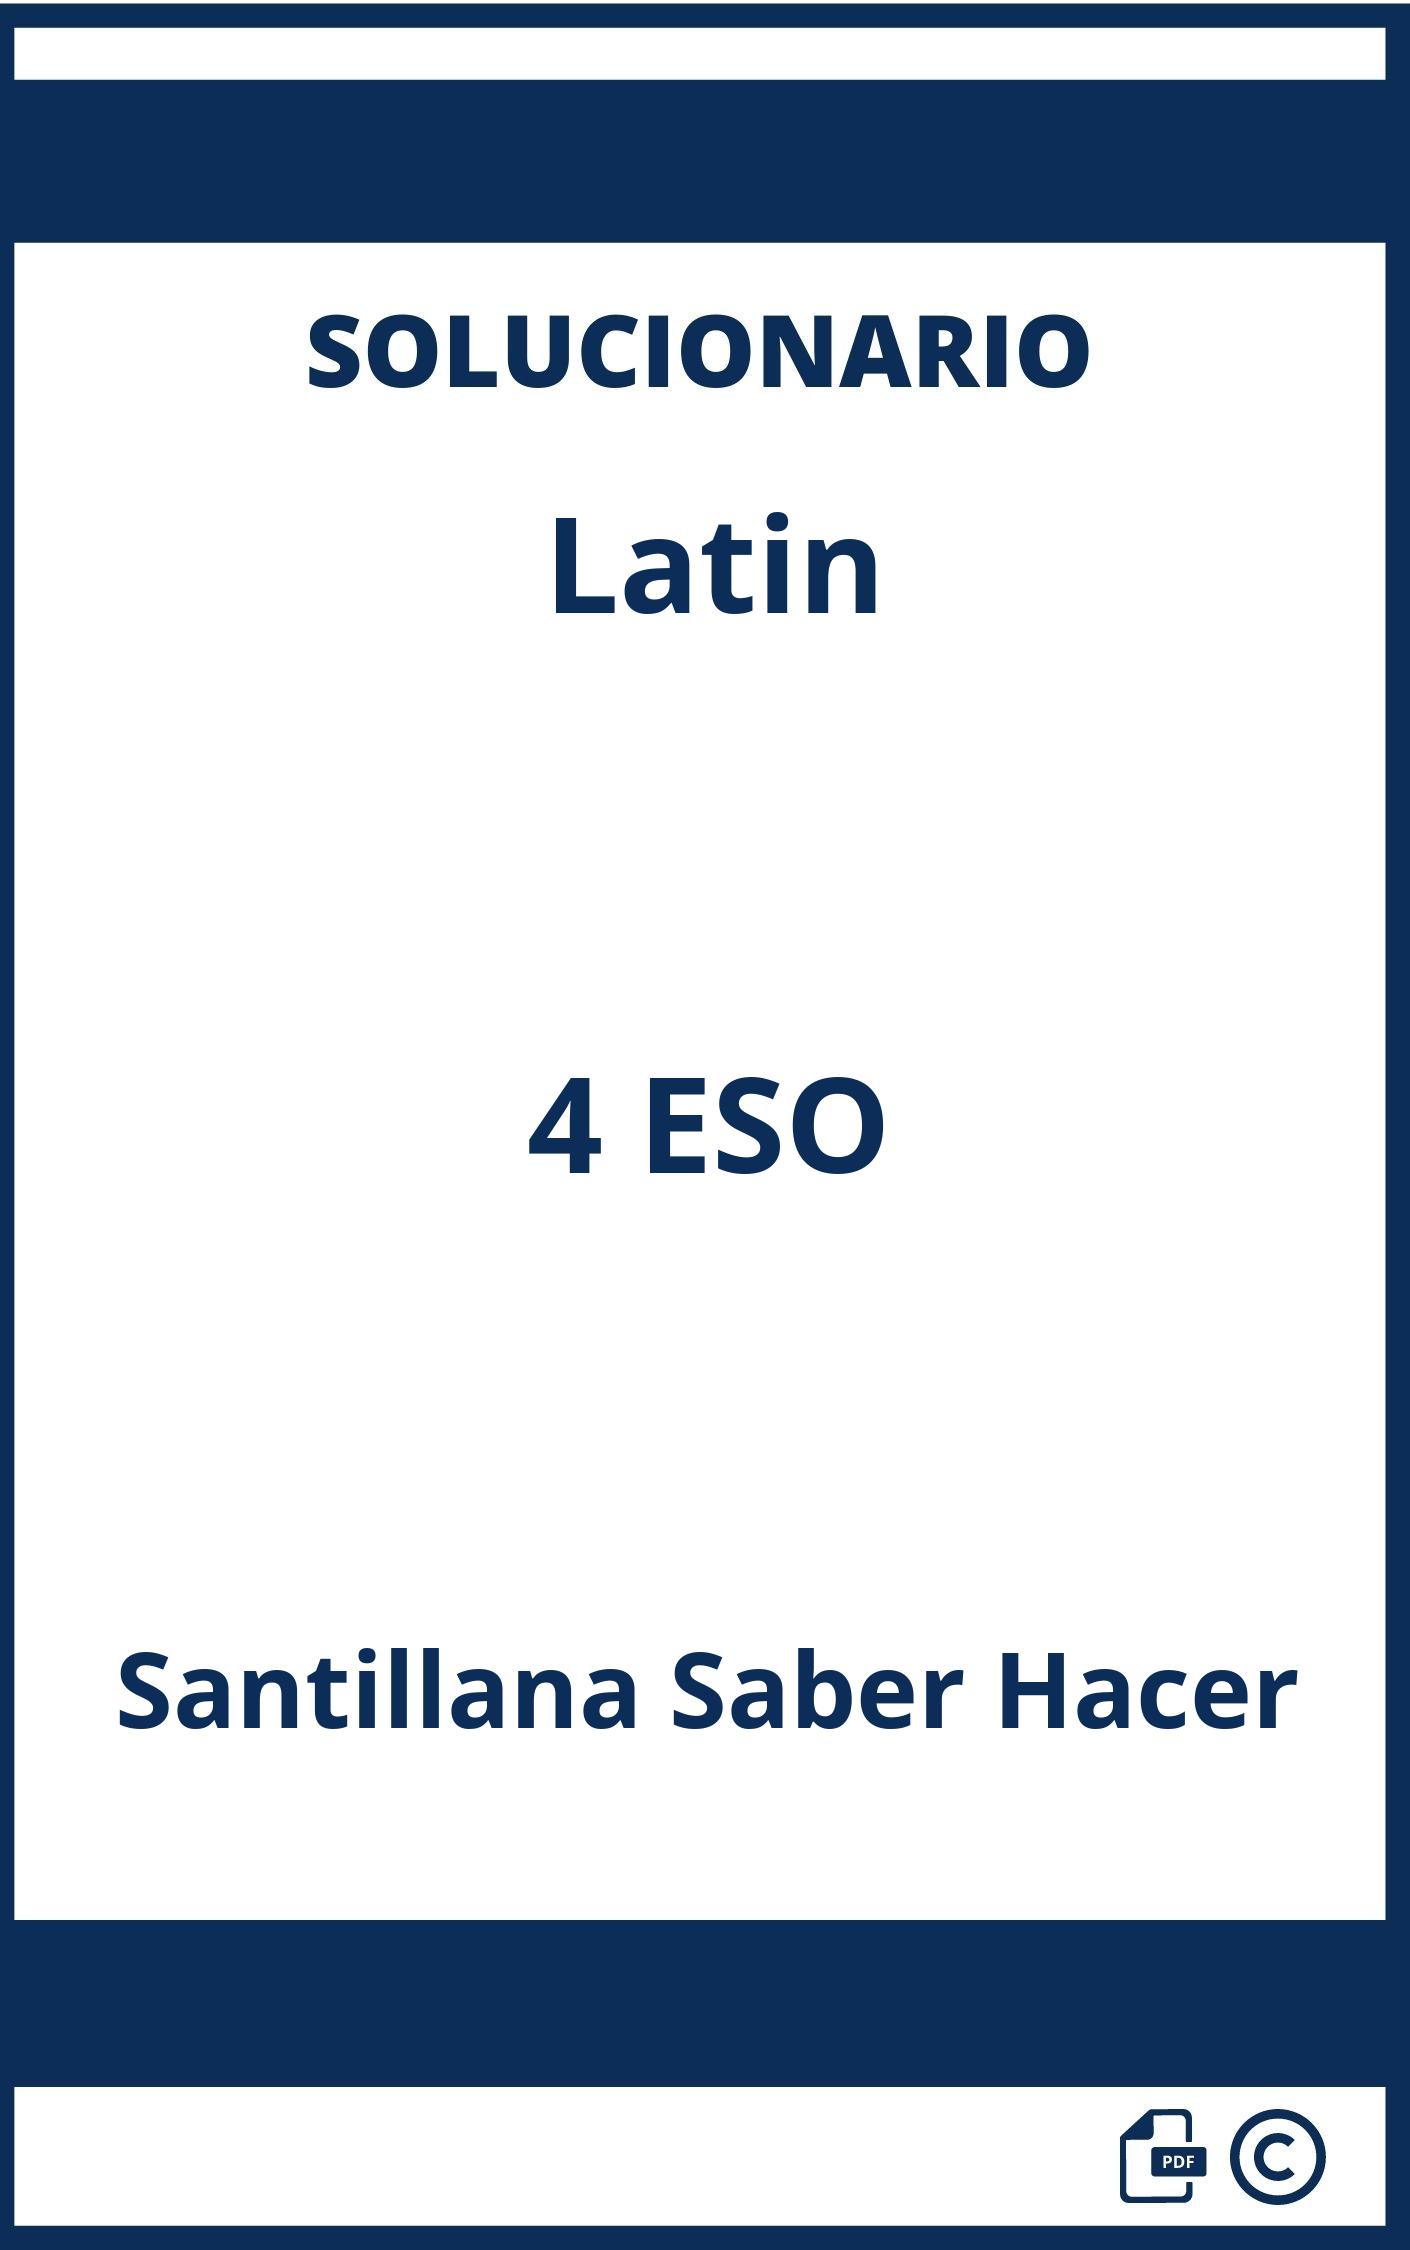 Solucionario Latin 4 ESO Santillana Saber Hacer